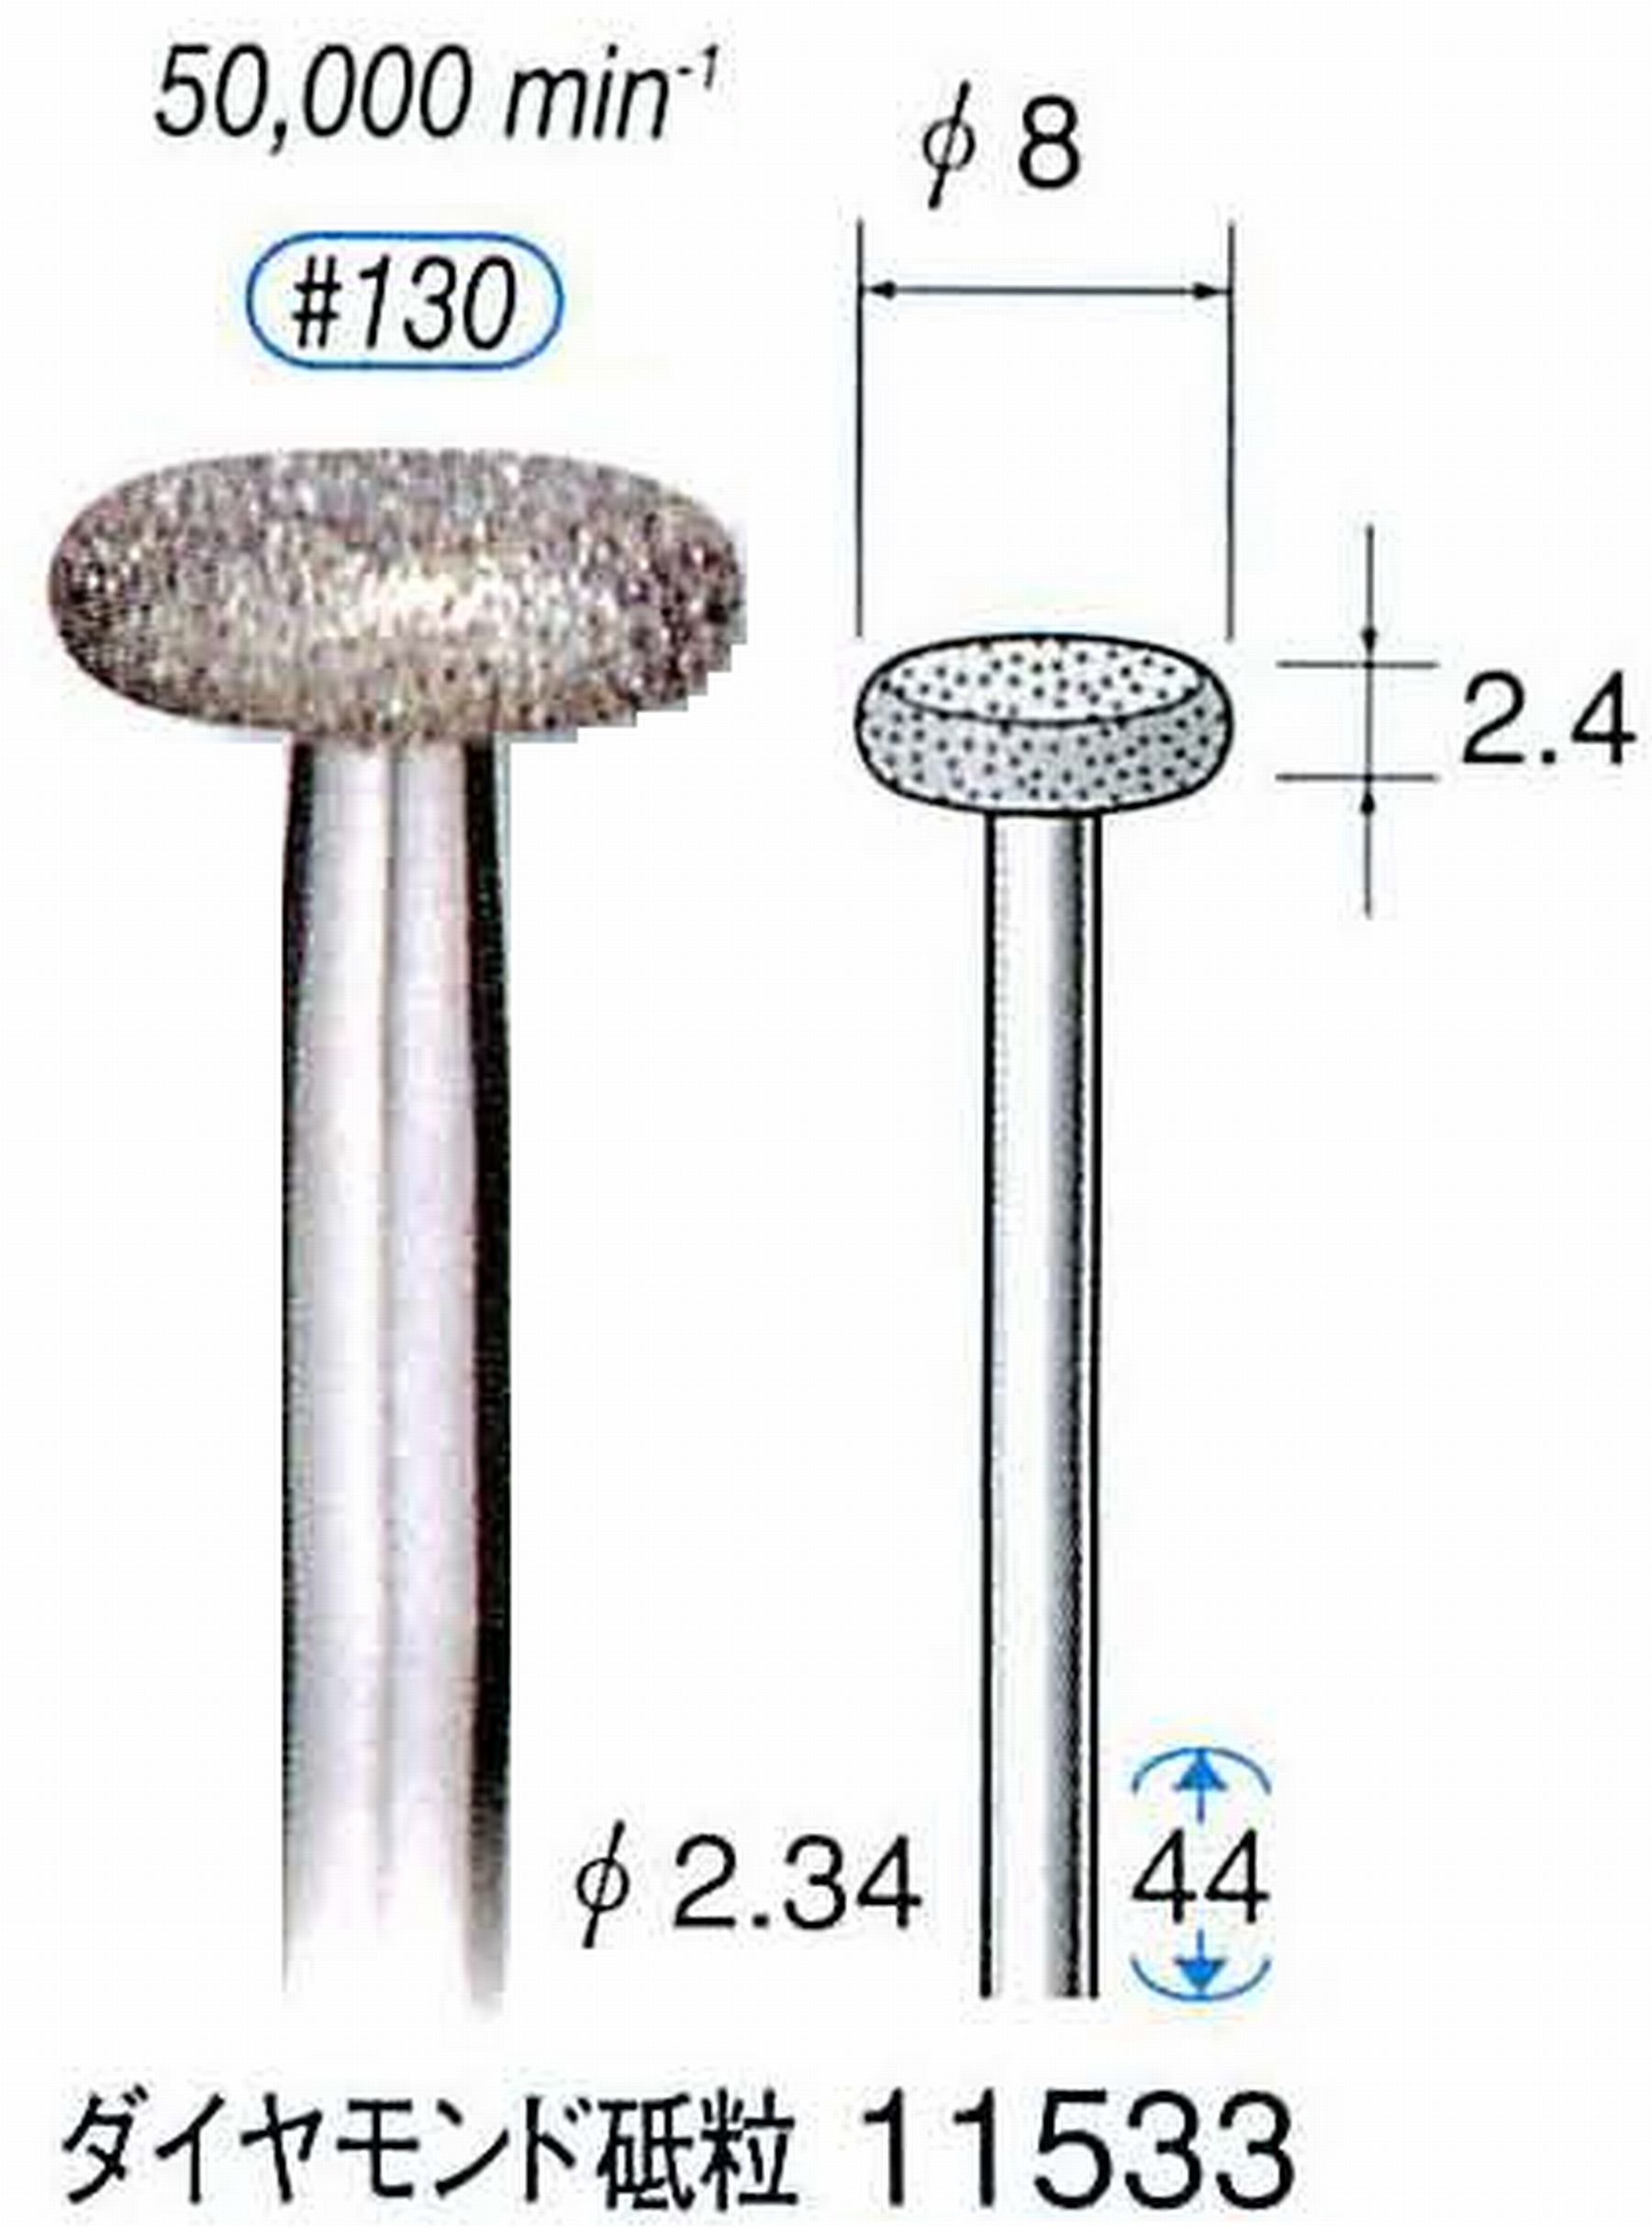 ナカニシ/NAKANISHI 電着ダイヤモンドバー ダイヤモンド砥粒 軸径(シャンク)φ2.34mm 11533